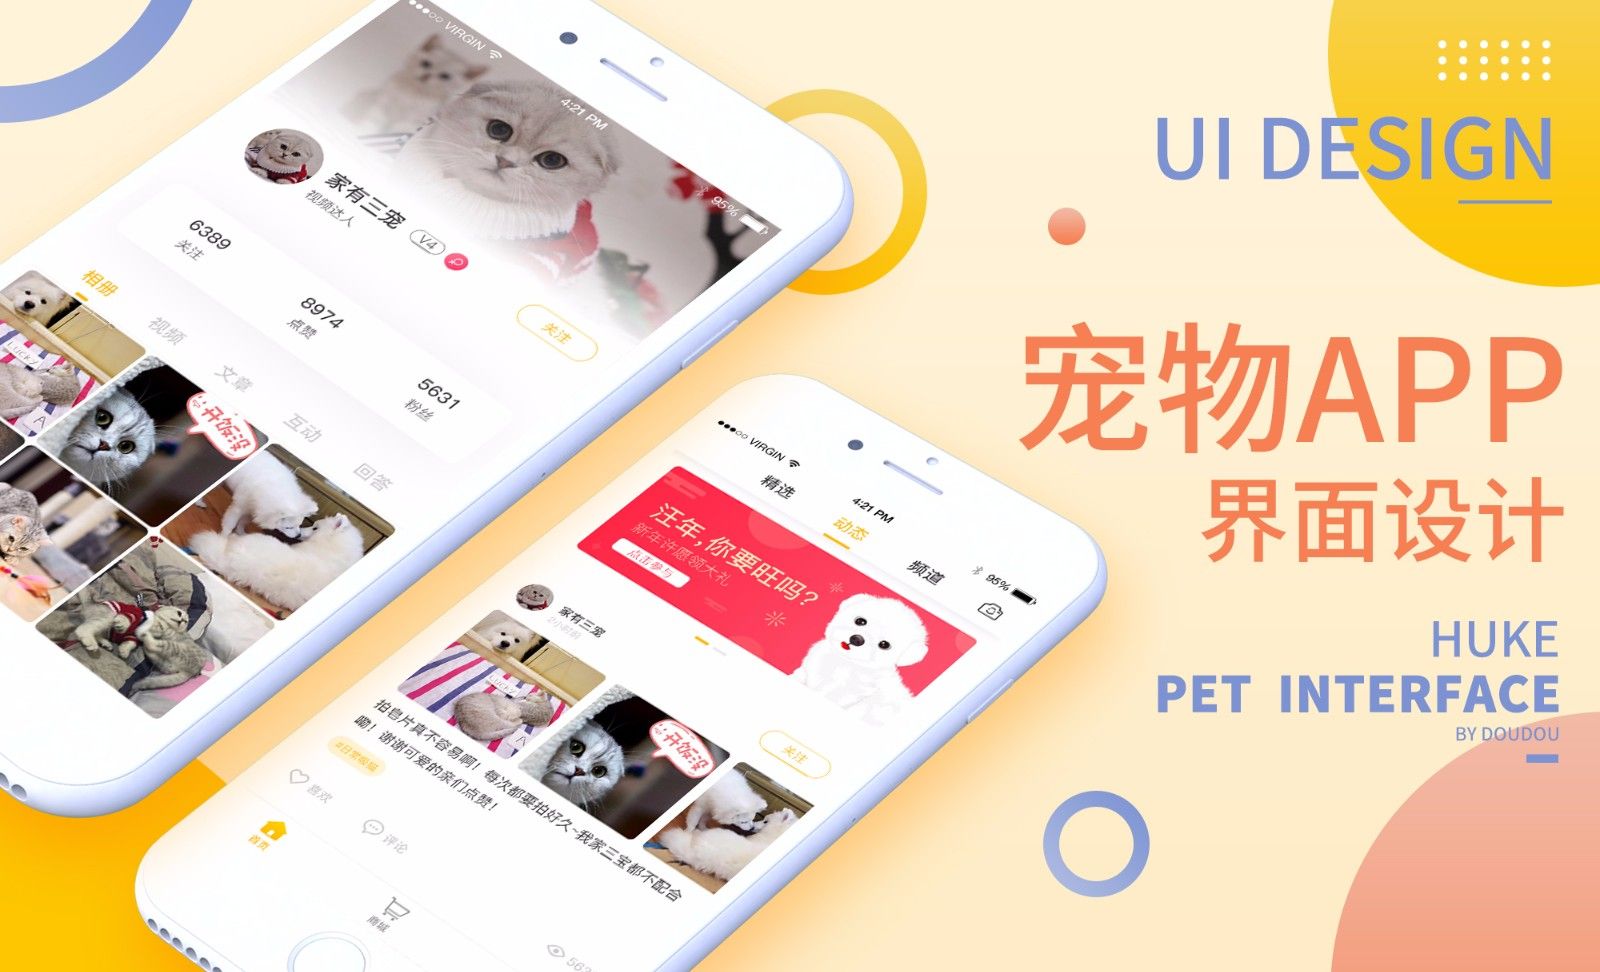 UI-宠物类APP界面设计